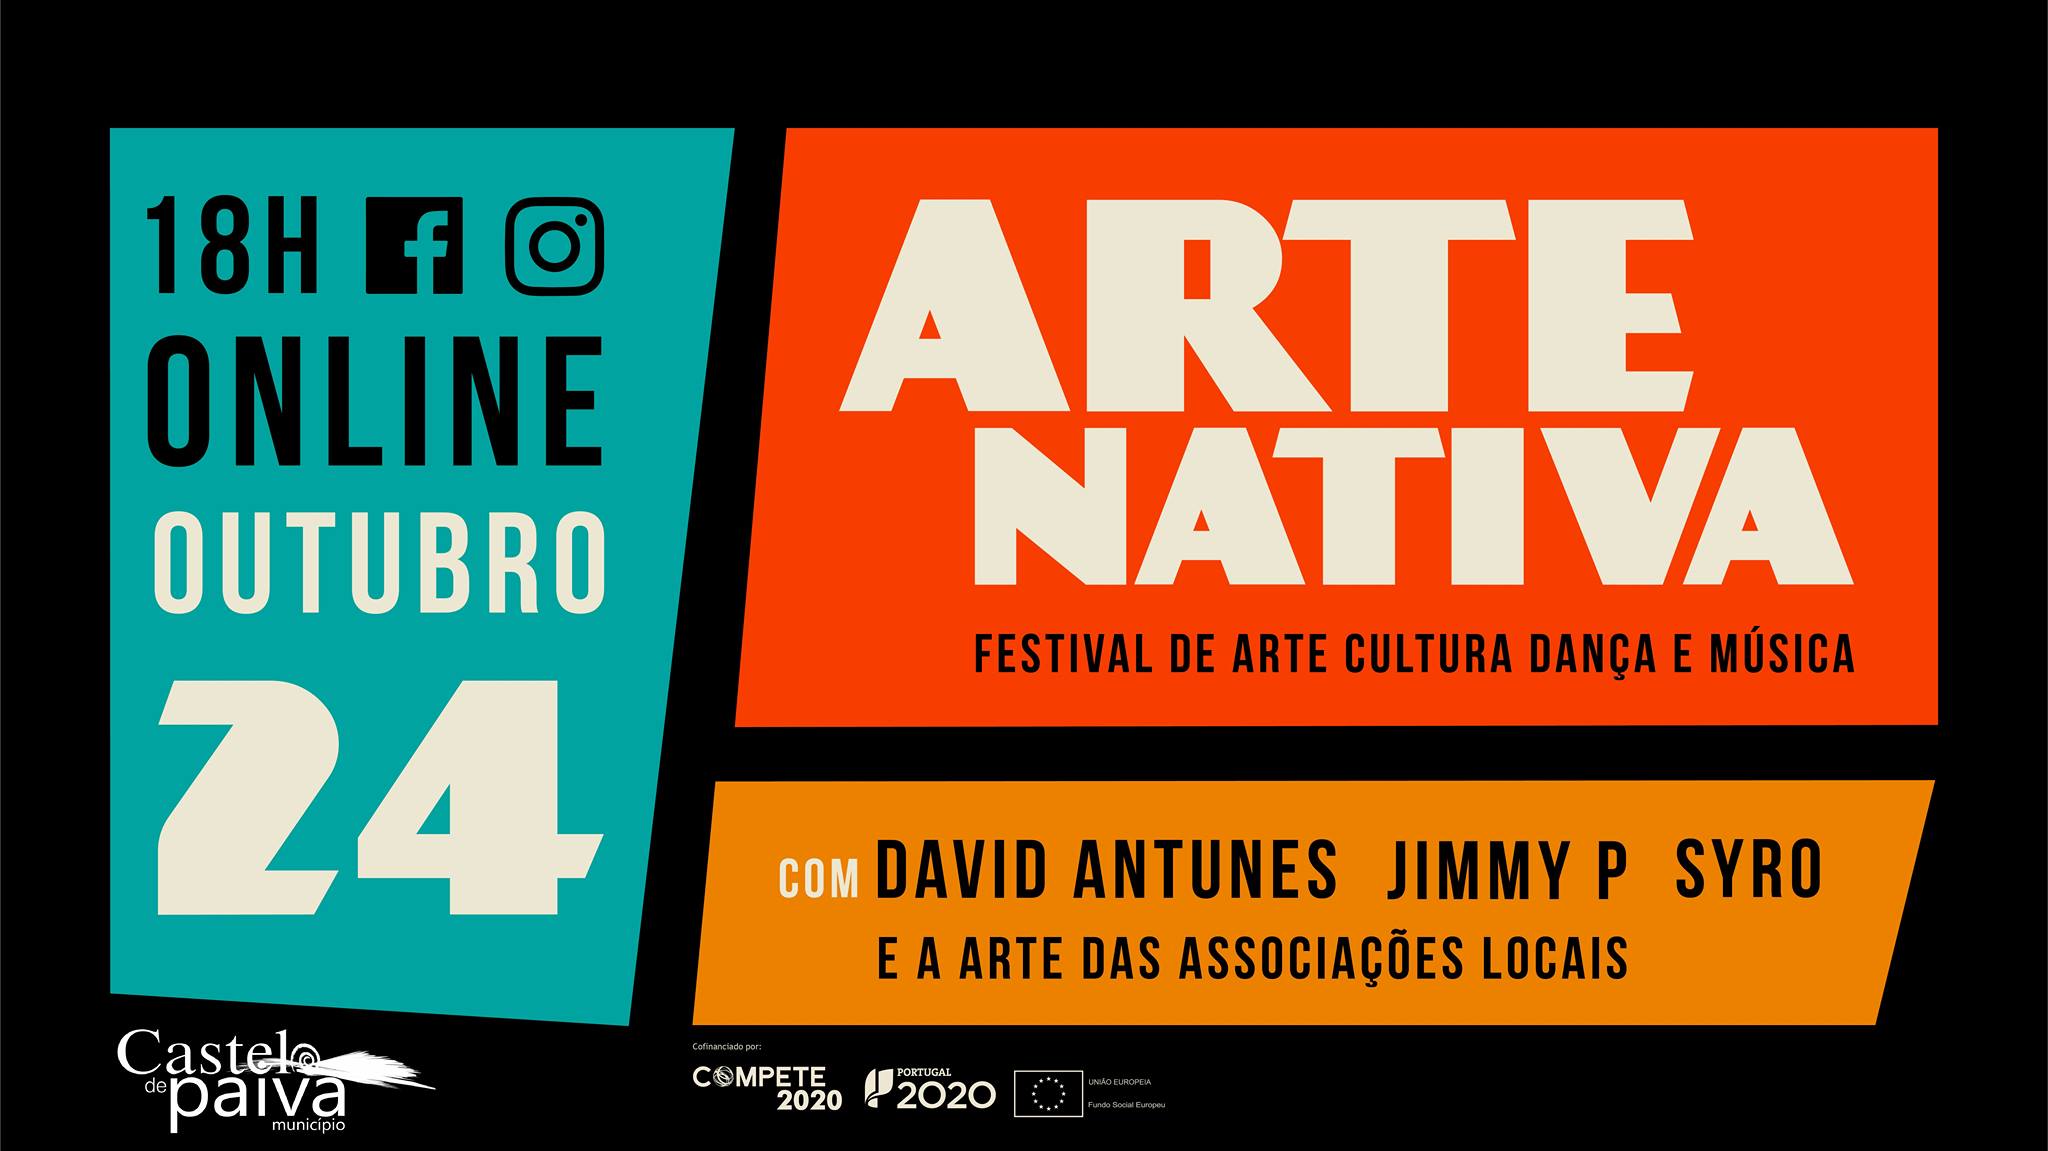 Arte Nativa — Festival de Arte, Música e Dança